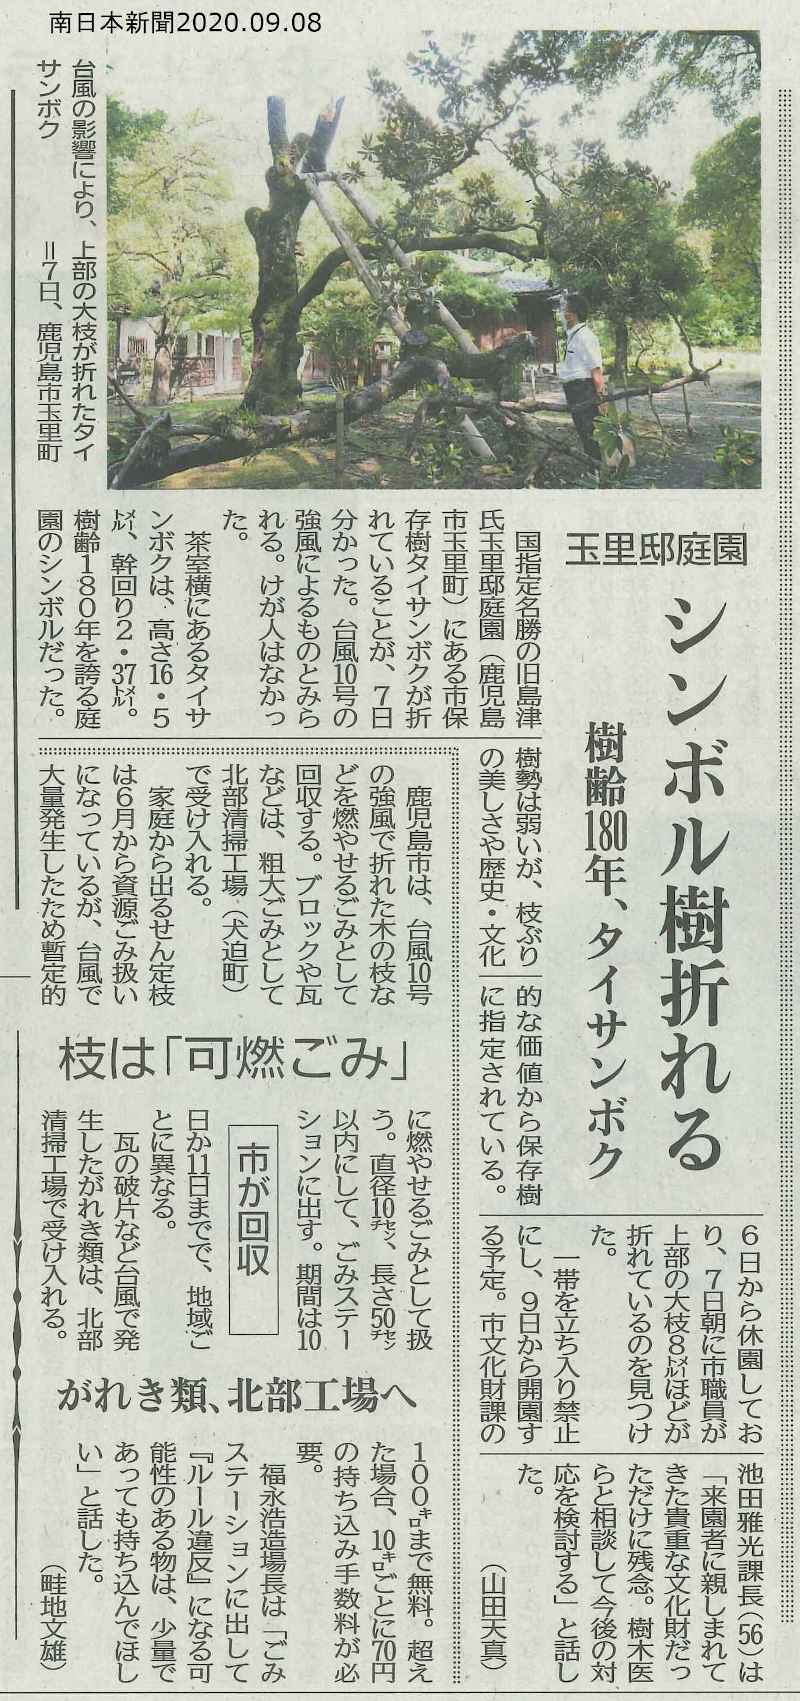 玉里邸庭園シンボル樹折れる_南日本新聞2020.09.08